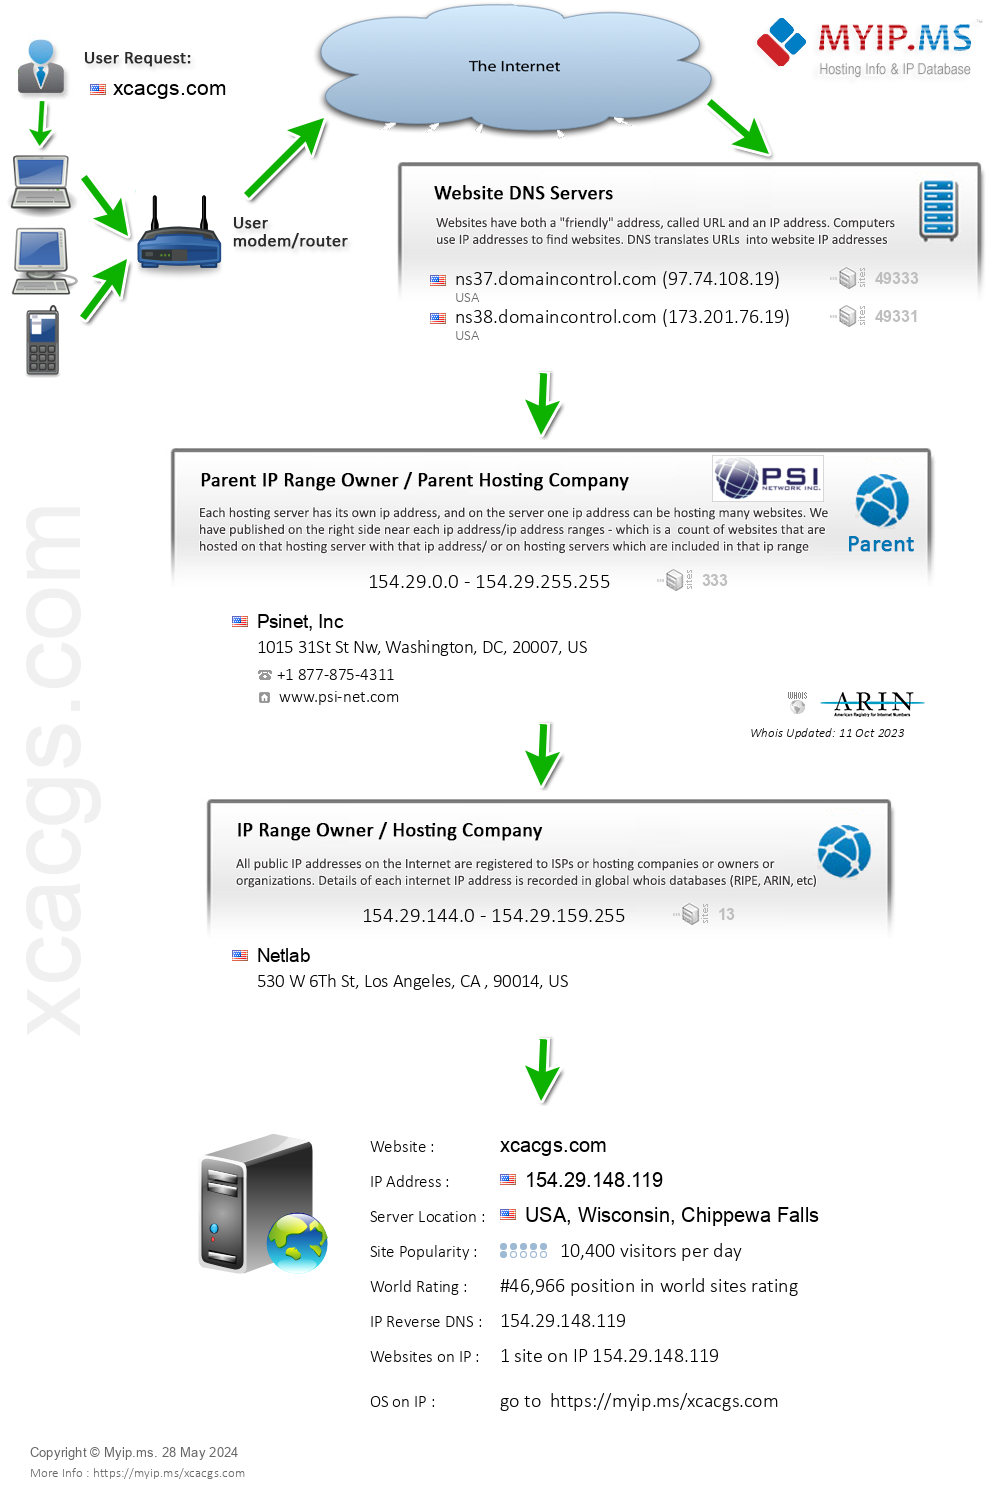 Xcacgs.com - Website Hosting Visual IP Diagram